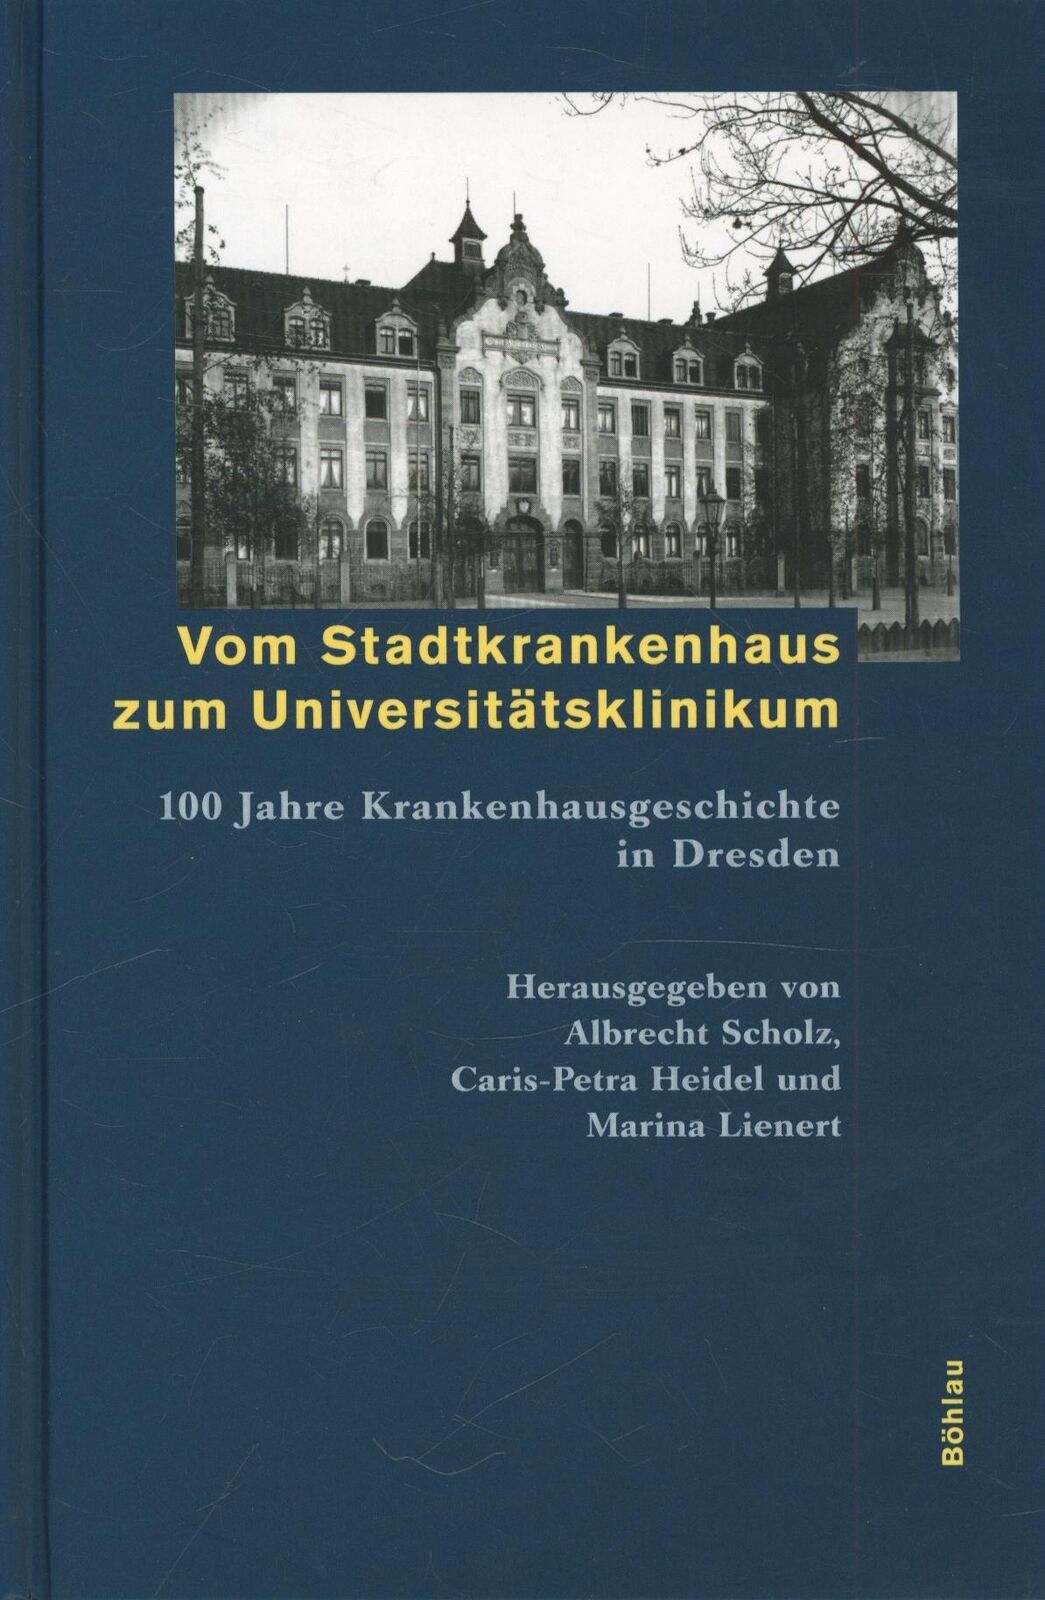 Vom Stadtkrankenhaus zum Universitätsklinikum. 100 Jahre Krankenhausgeschichte i - Scholz, Albrecht, Heidel, Caris P, Lienert, Marina